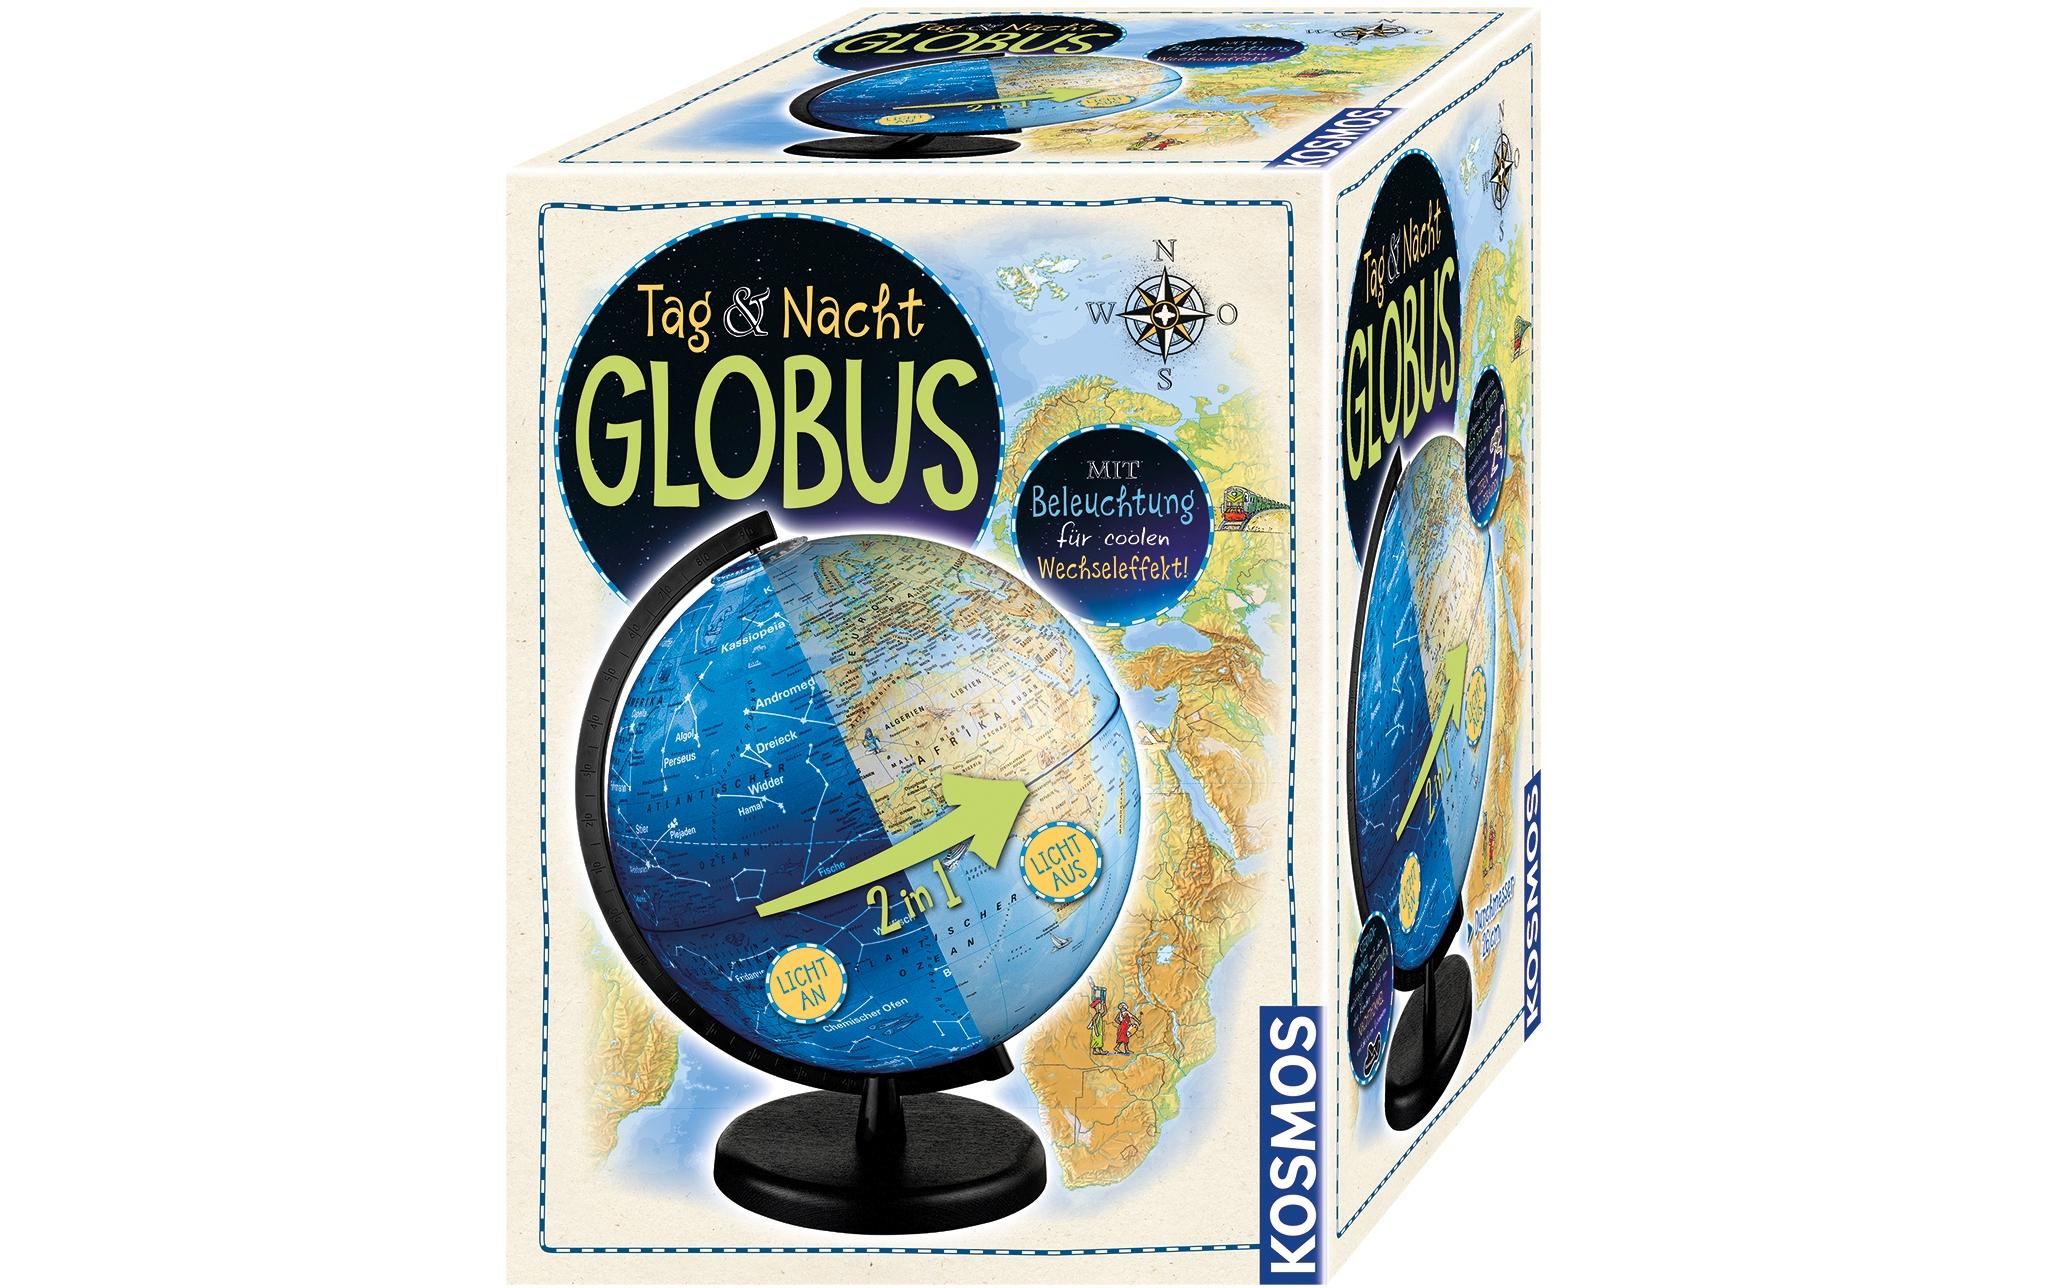 Kosmos Globus Tag & Nacht